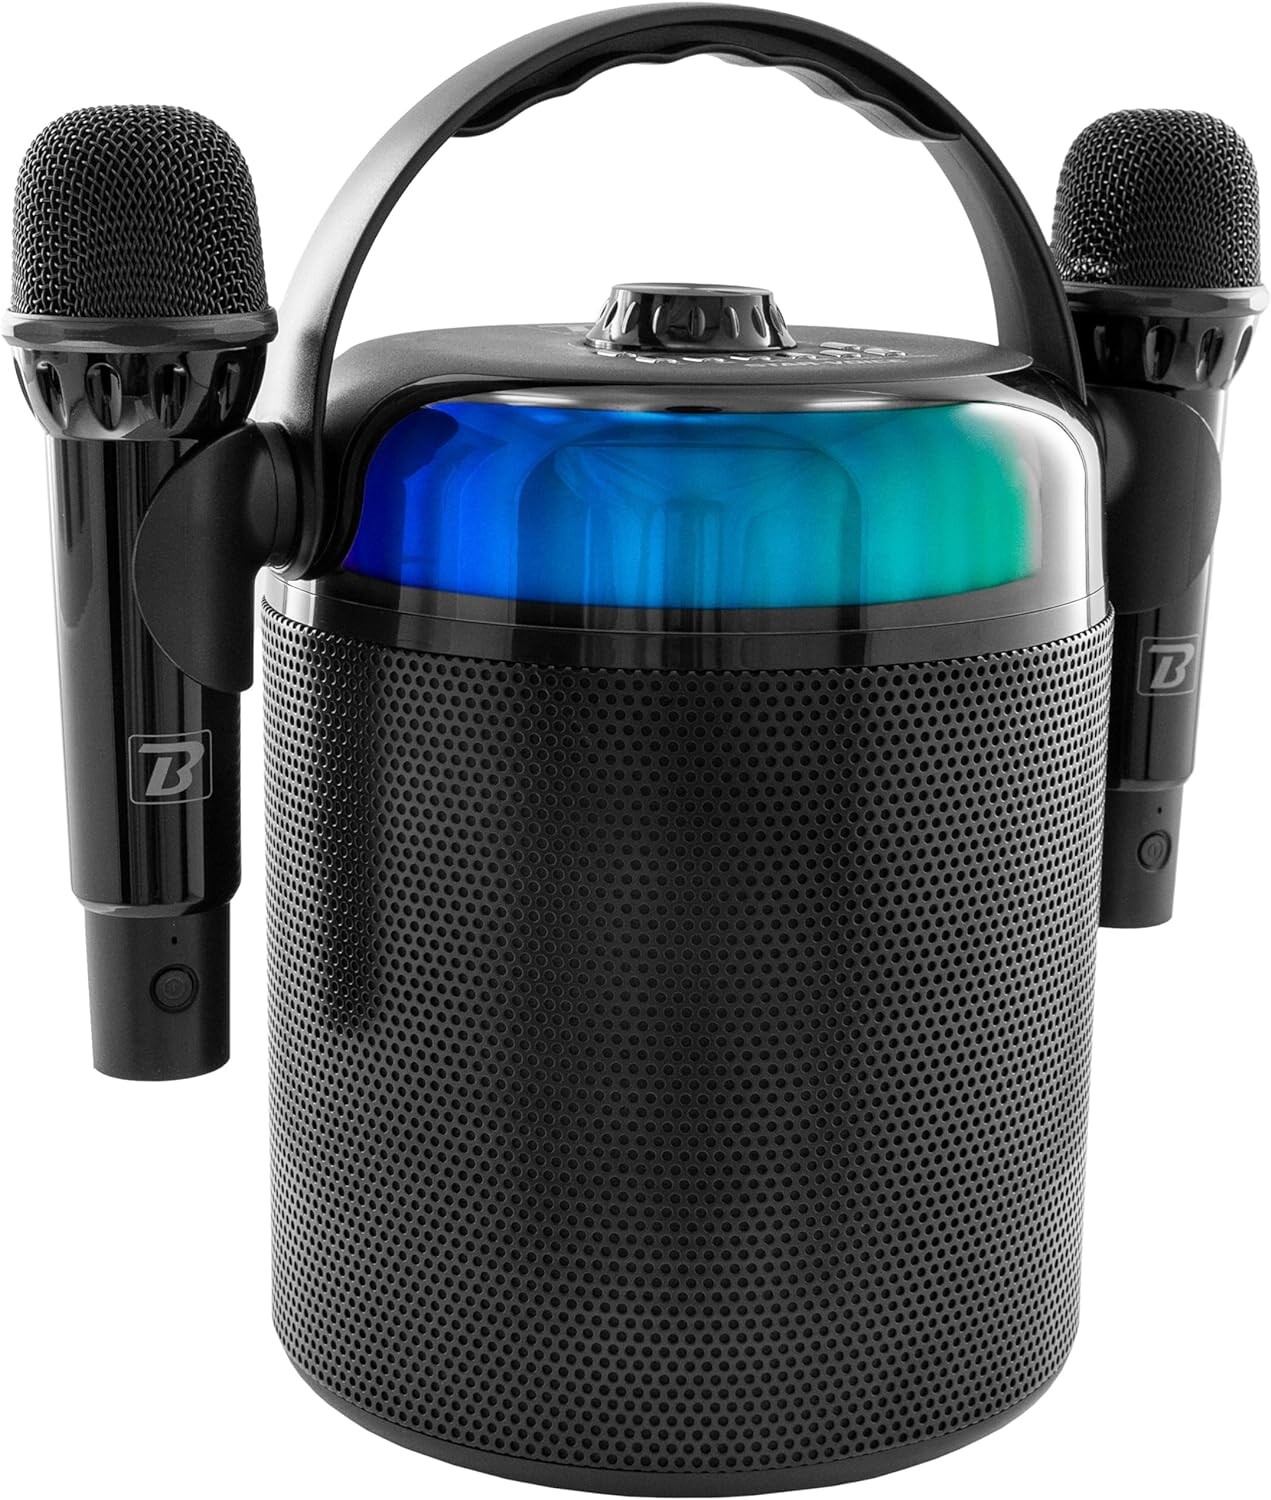 Machine à karaoké avec 2 microphones sans fil,Jouet karaoké